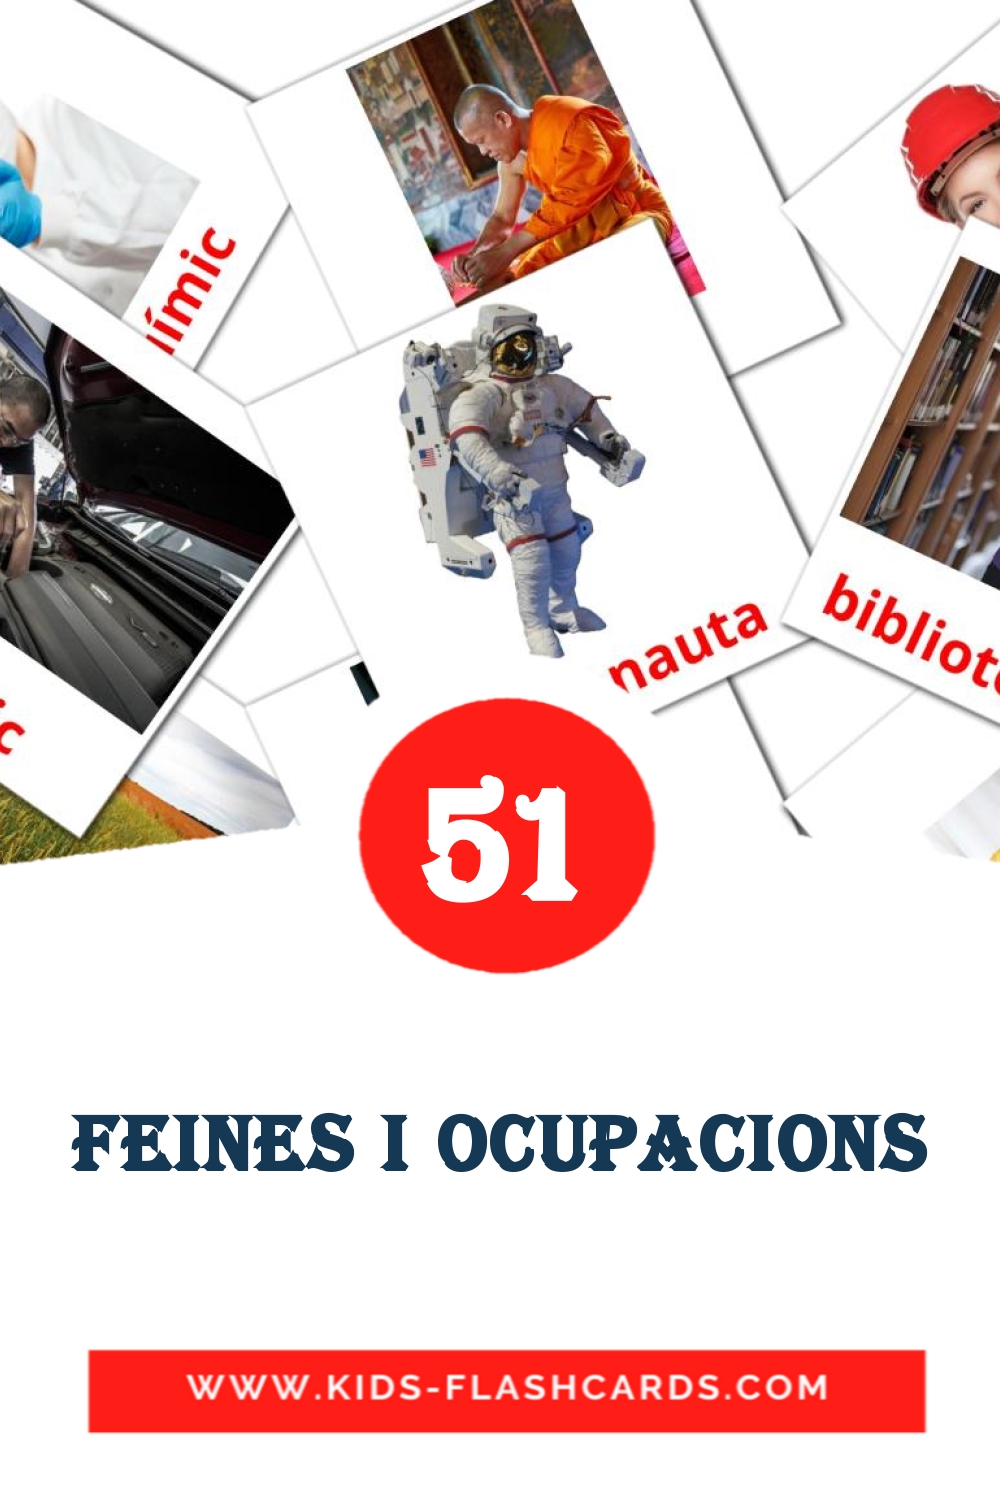 51 Feines i Ocupacions fotokaarten voor kleuters in het catalaans